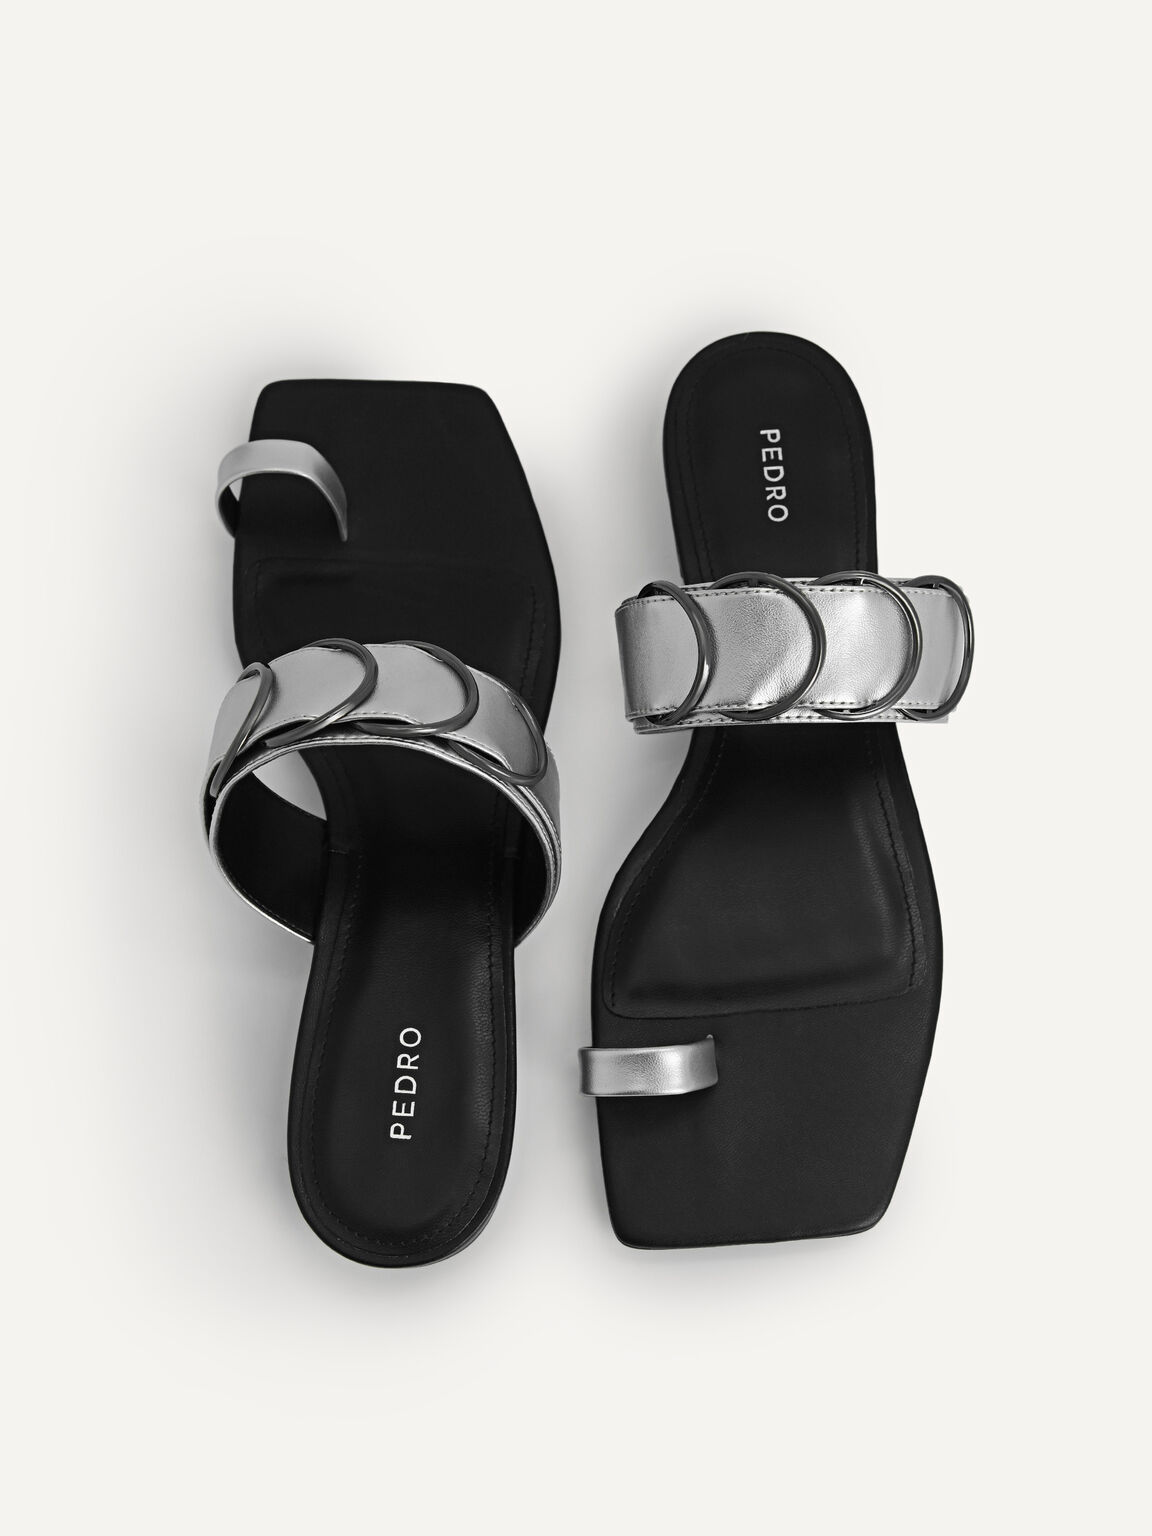 Metallic Toe Loop Sandals, Silver, hi-res